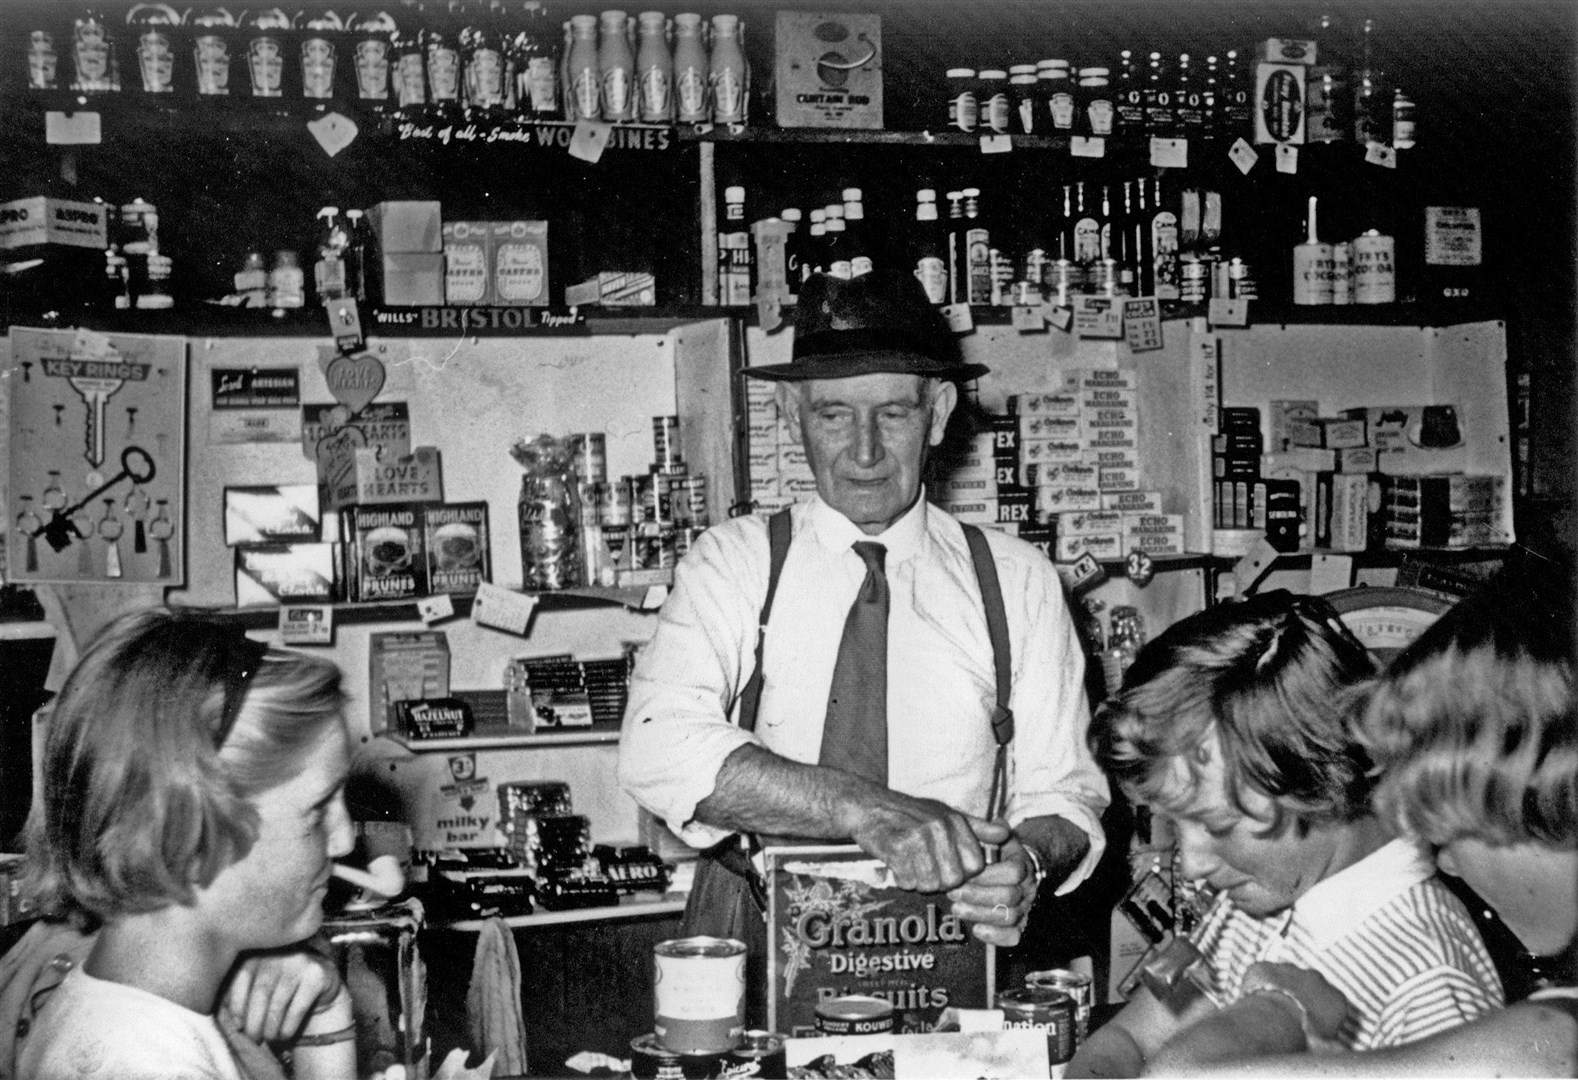 Roddie MacLean ‘Ruairidh Shildeag’ at the counter of his shop in Badachro, 1961